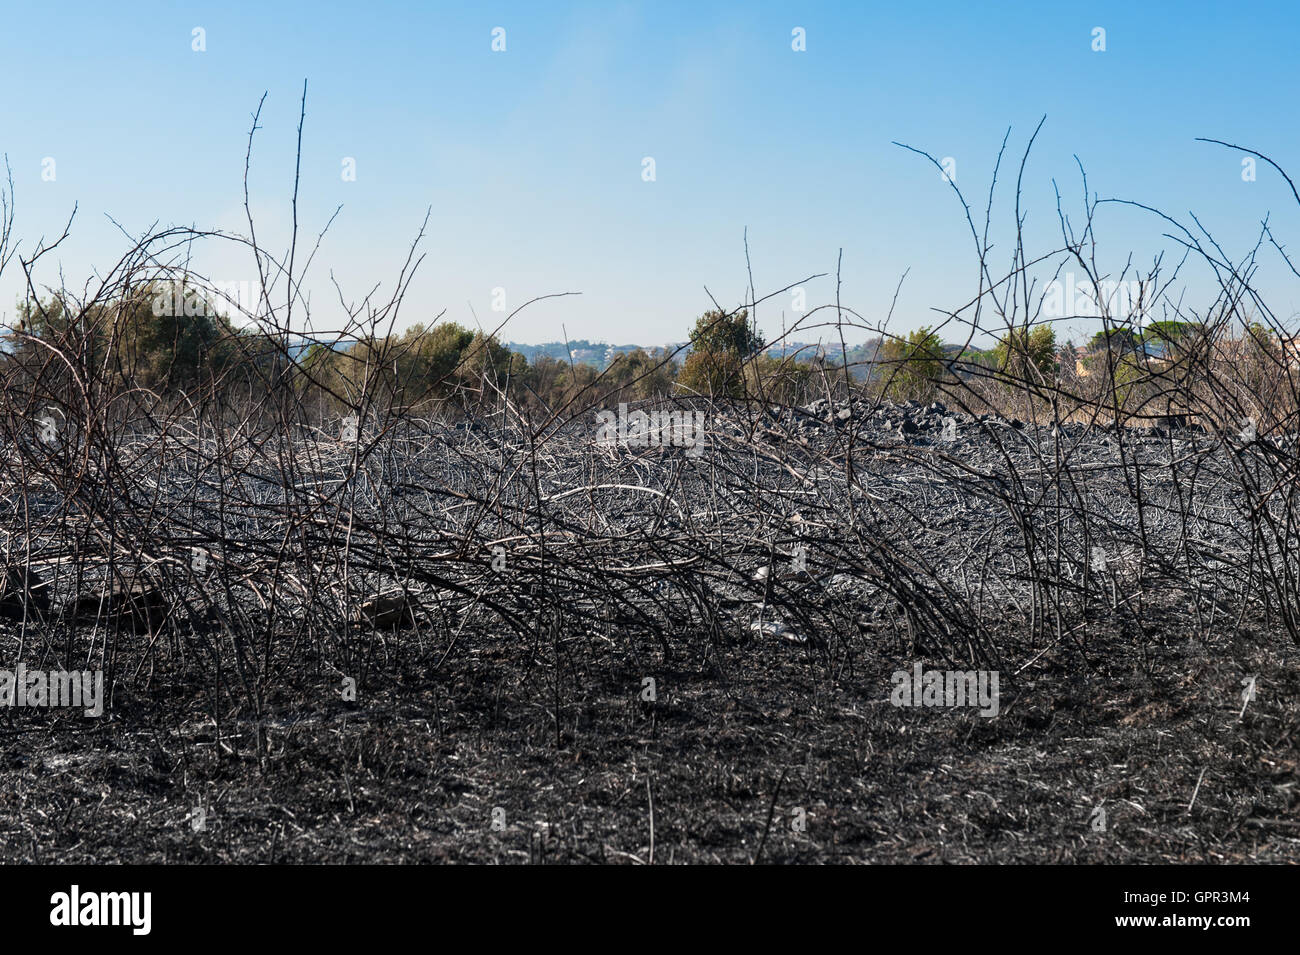 La vista horizontal de un campo quemado y tierra quemada tras el incendio Blaze, paisaje urbano en segundo plano. Foto de stock